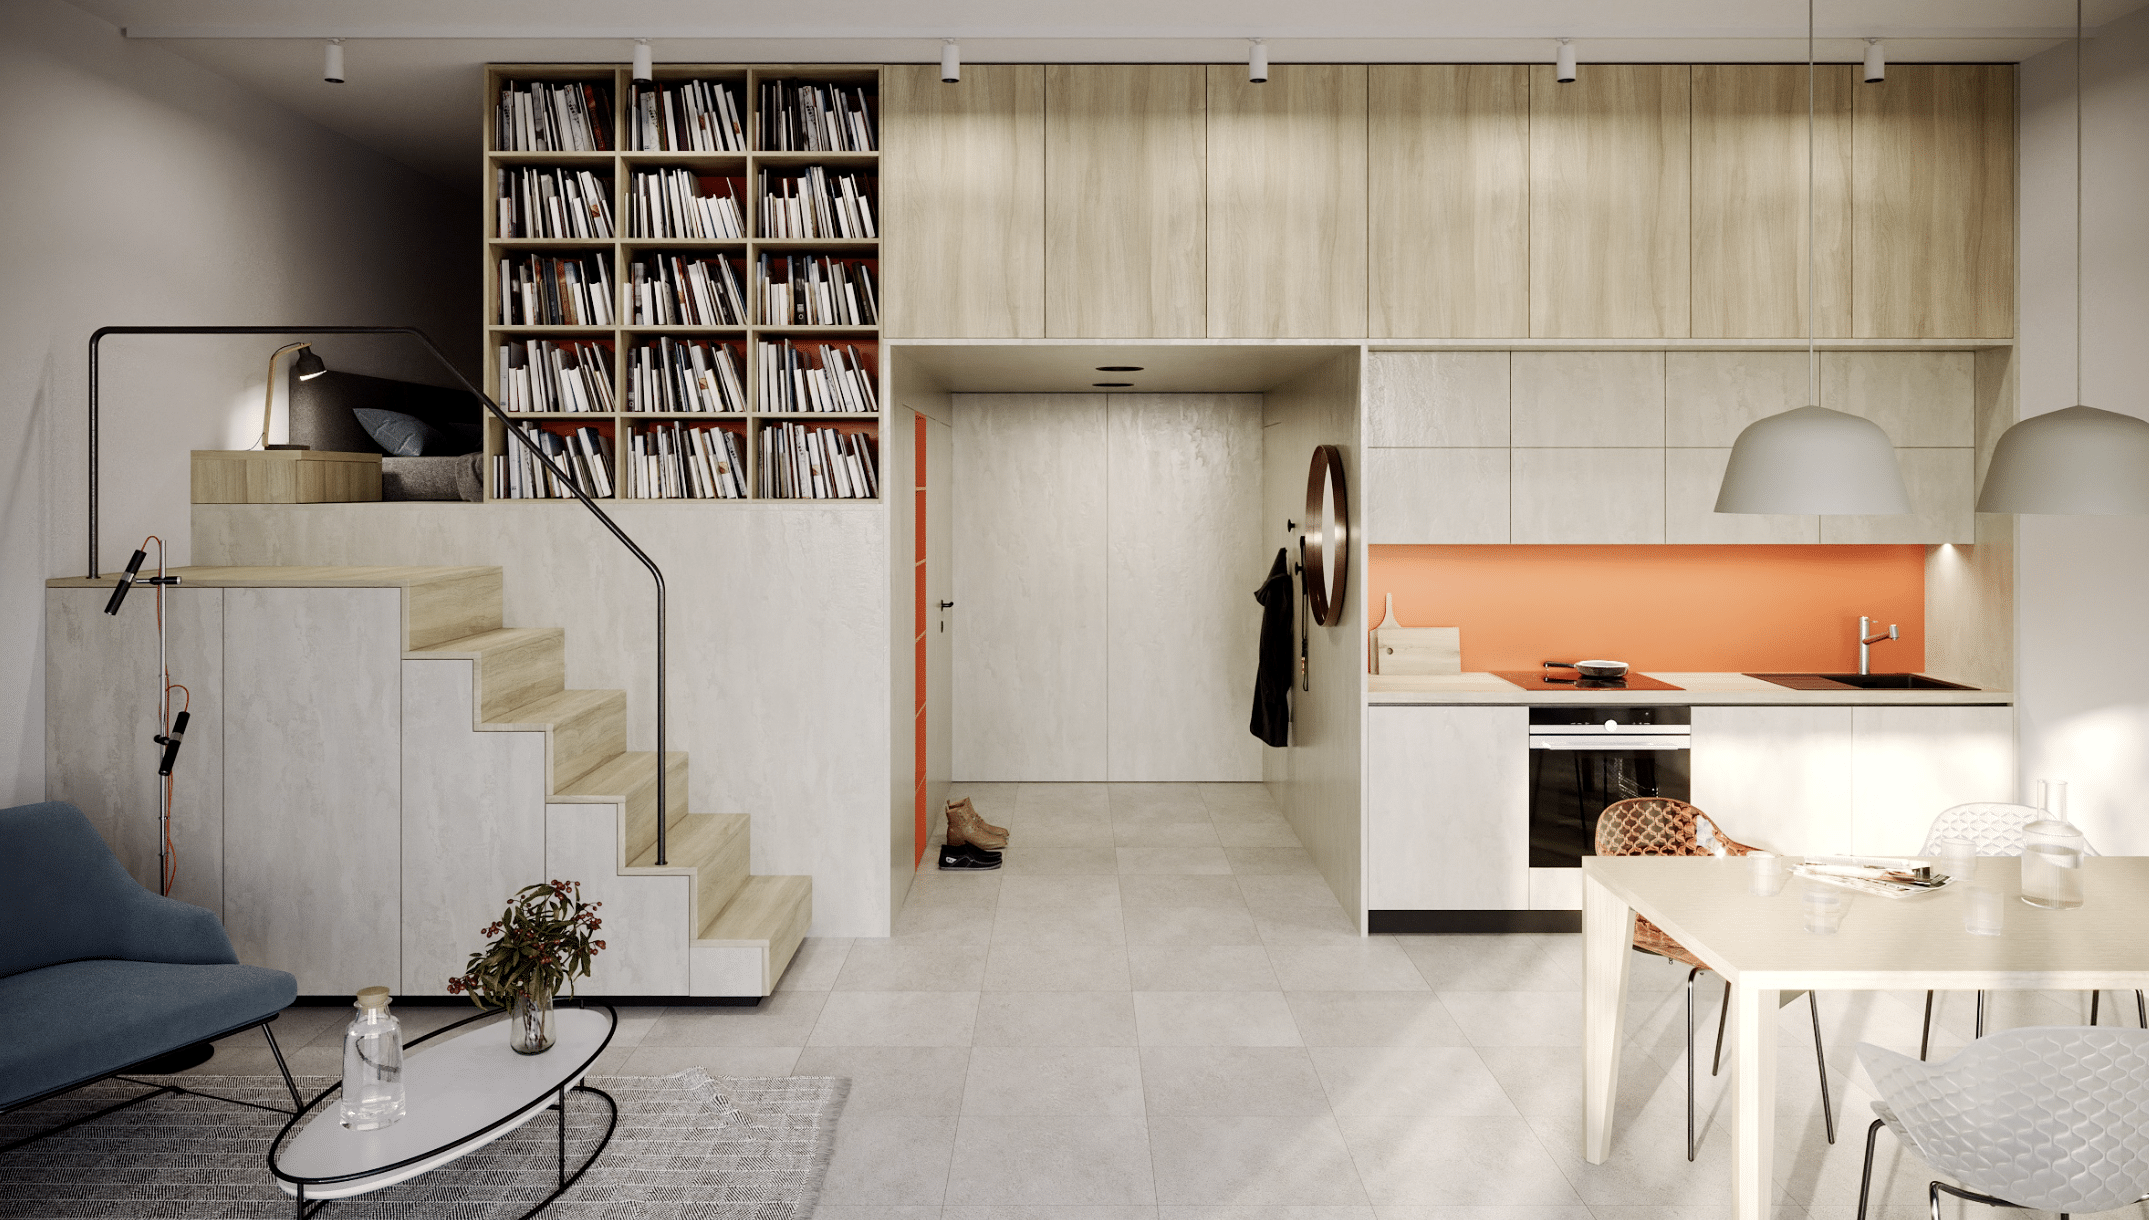 KRONOSPAN zeigt ein modernes Wohnkonzept mit Küchenzeile, Treppe zum Schlafbereich und einem Verbau mit Schränken und Regalen.